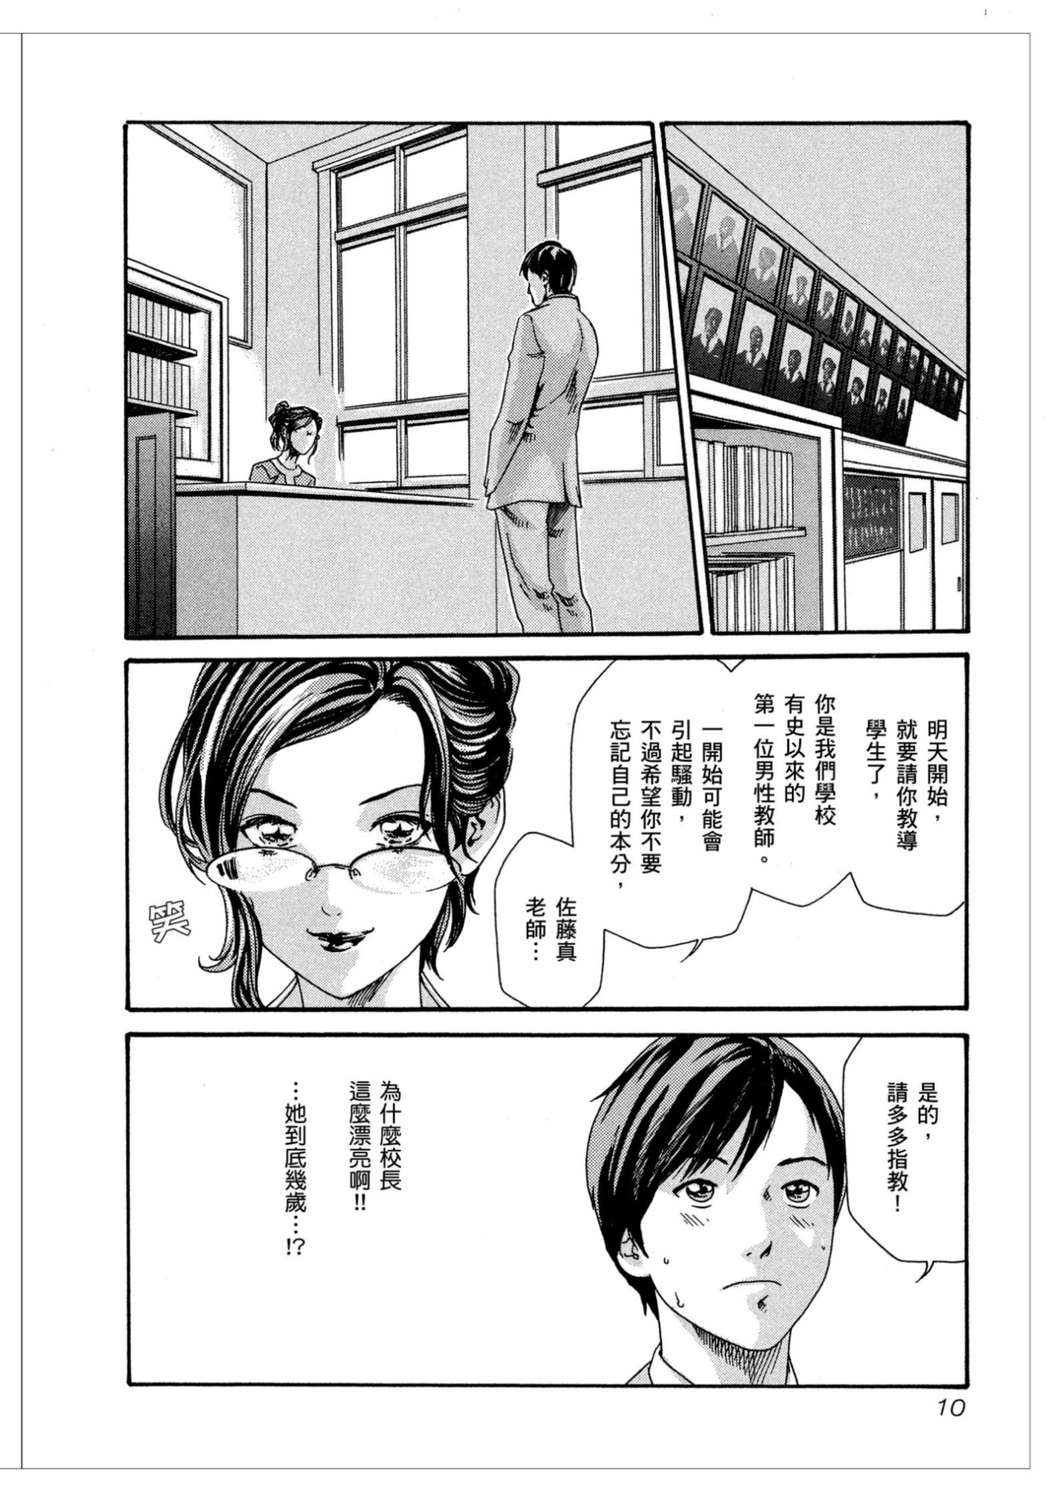 妄想老师漫画单行本 第1集-漫画DB